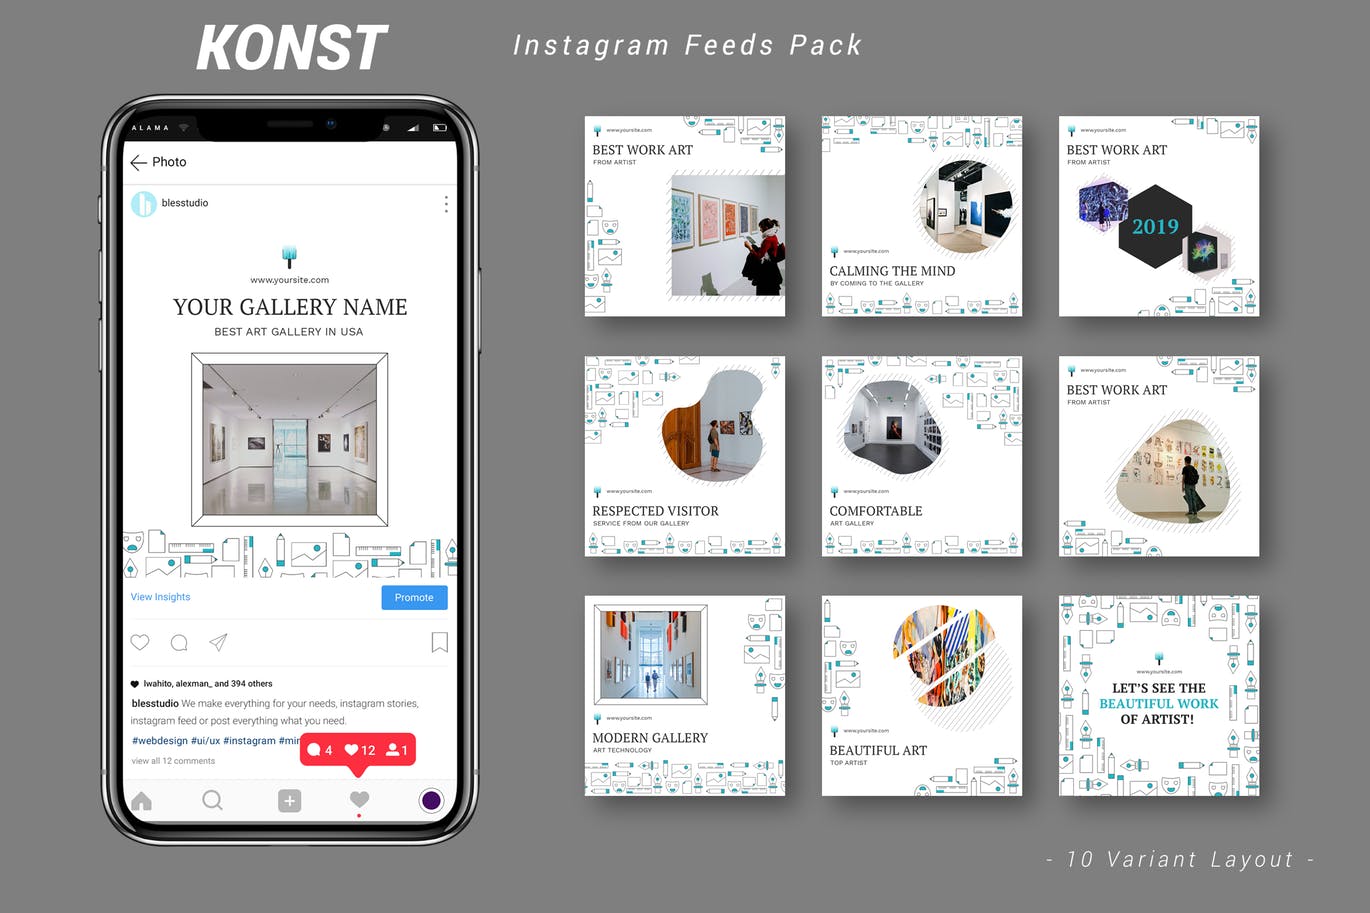 创意艺术展览主题Instagram信息流广告设计模板素材中国精选 Konst – Instagram Feeds Pack插图